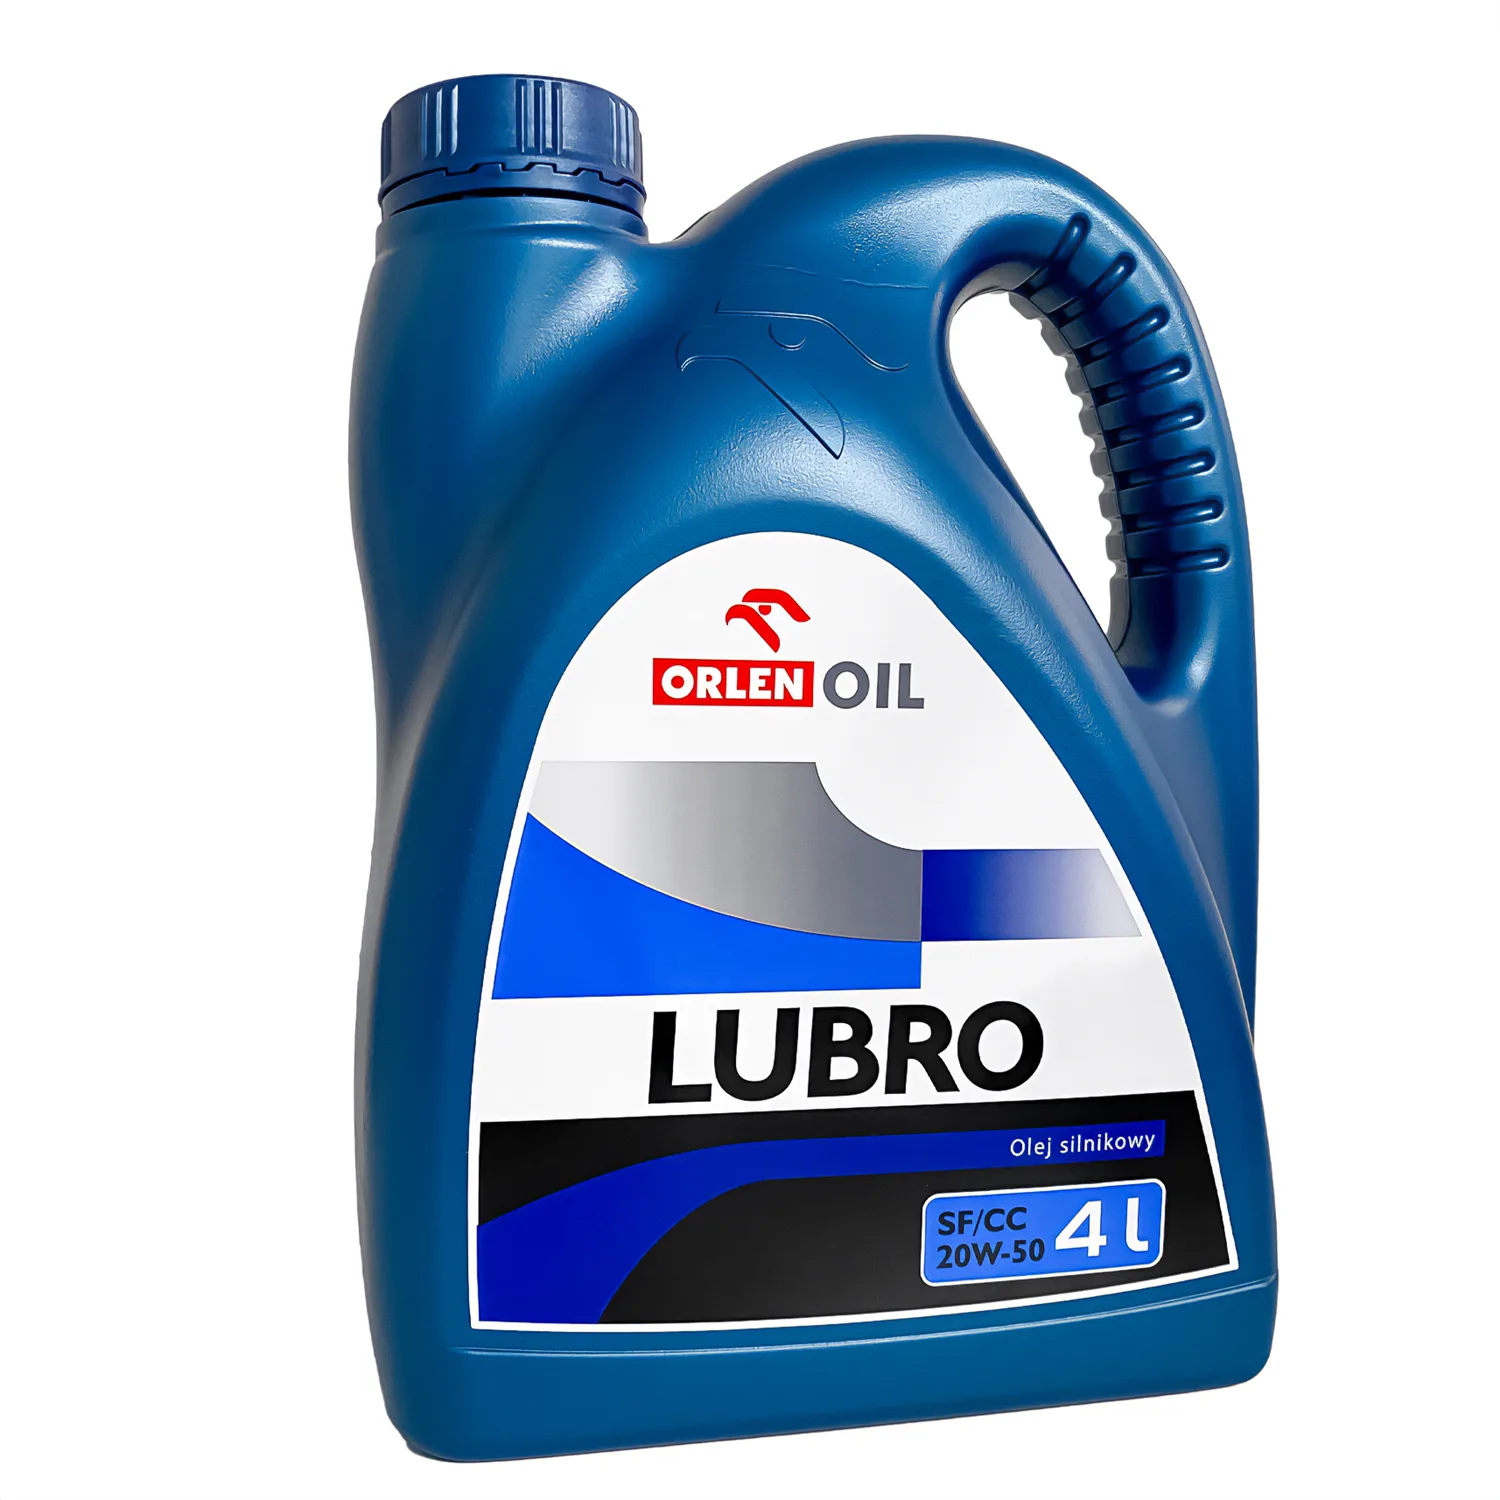 ORLEN olej silnikowy LUBRO SF/CC 20W-50 4L